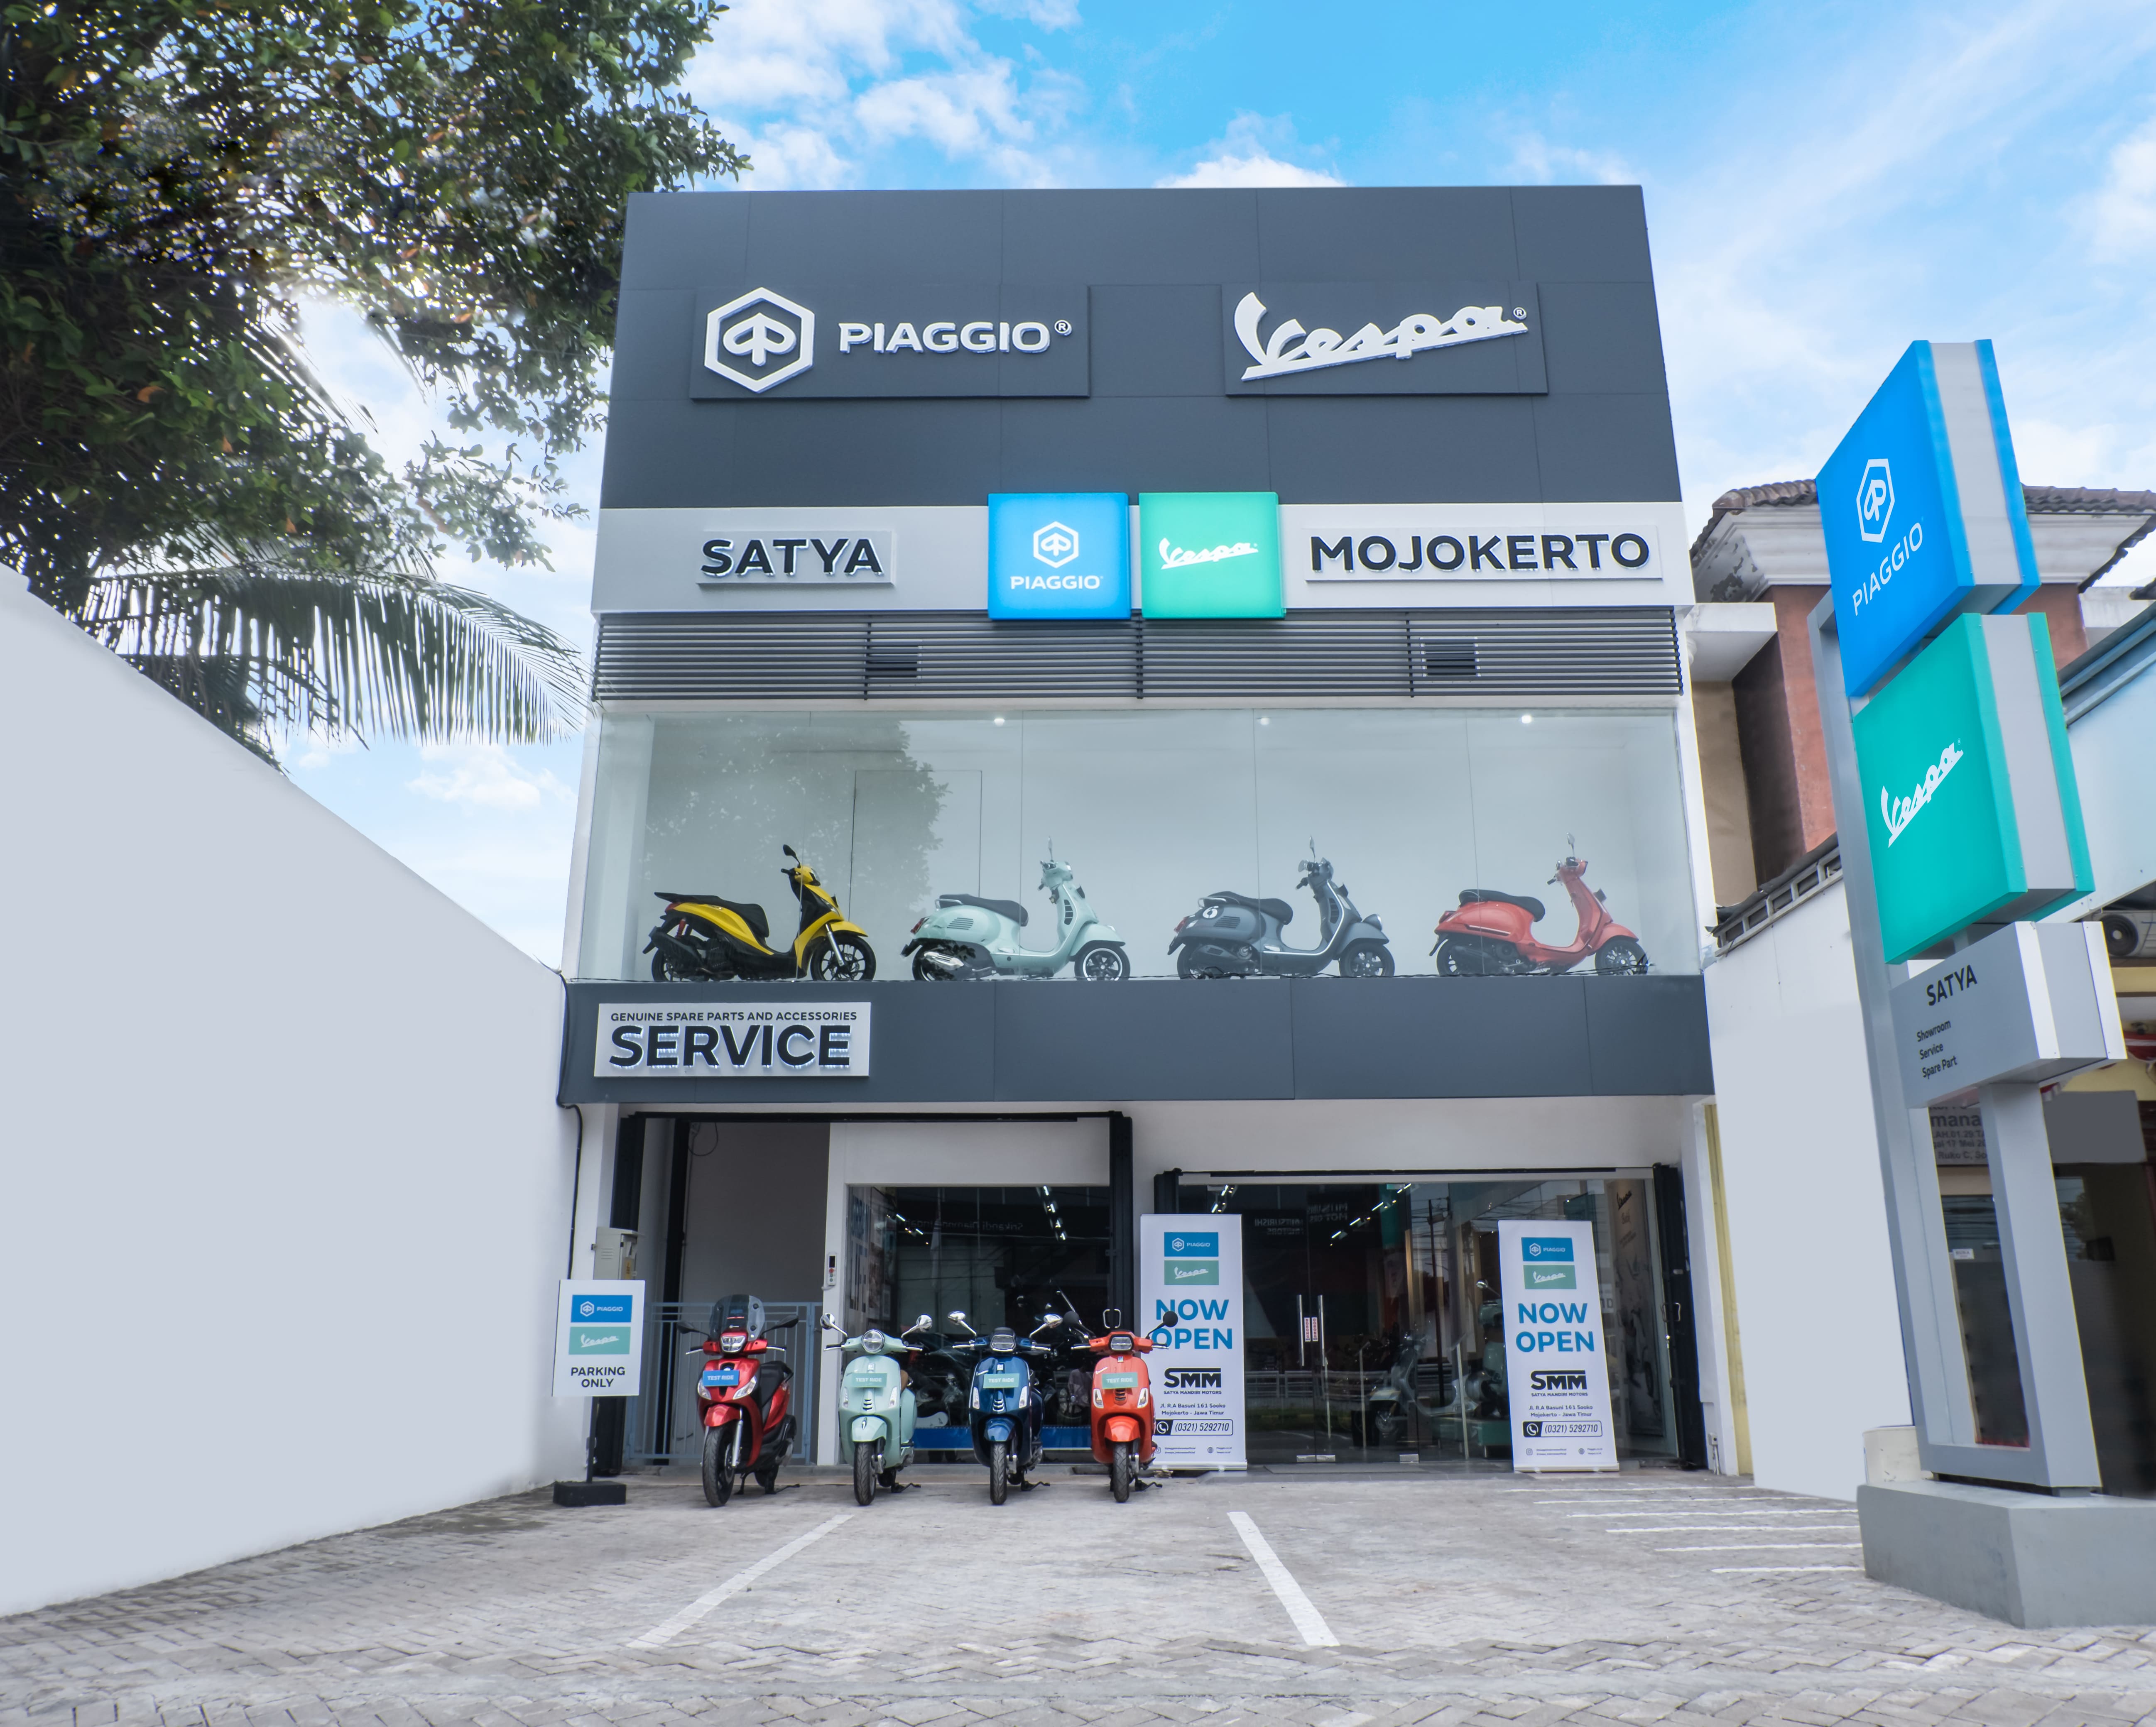 Diler Premium Motoplex 2 Hadir di Mojokerto, Piaggio Perluas Jaringan di Jawa Timur 